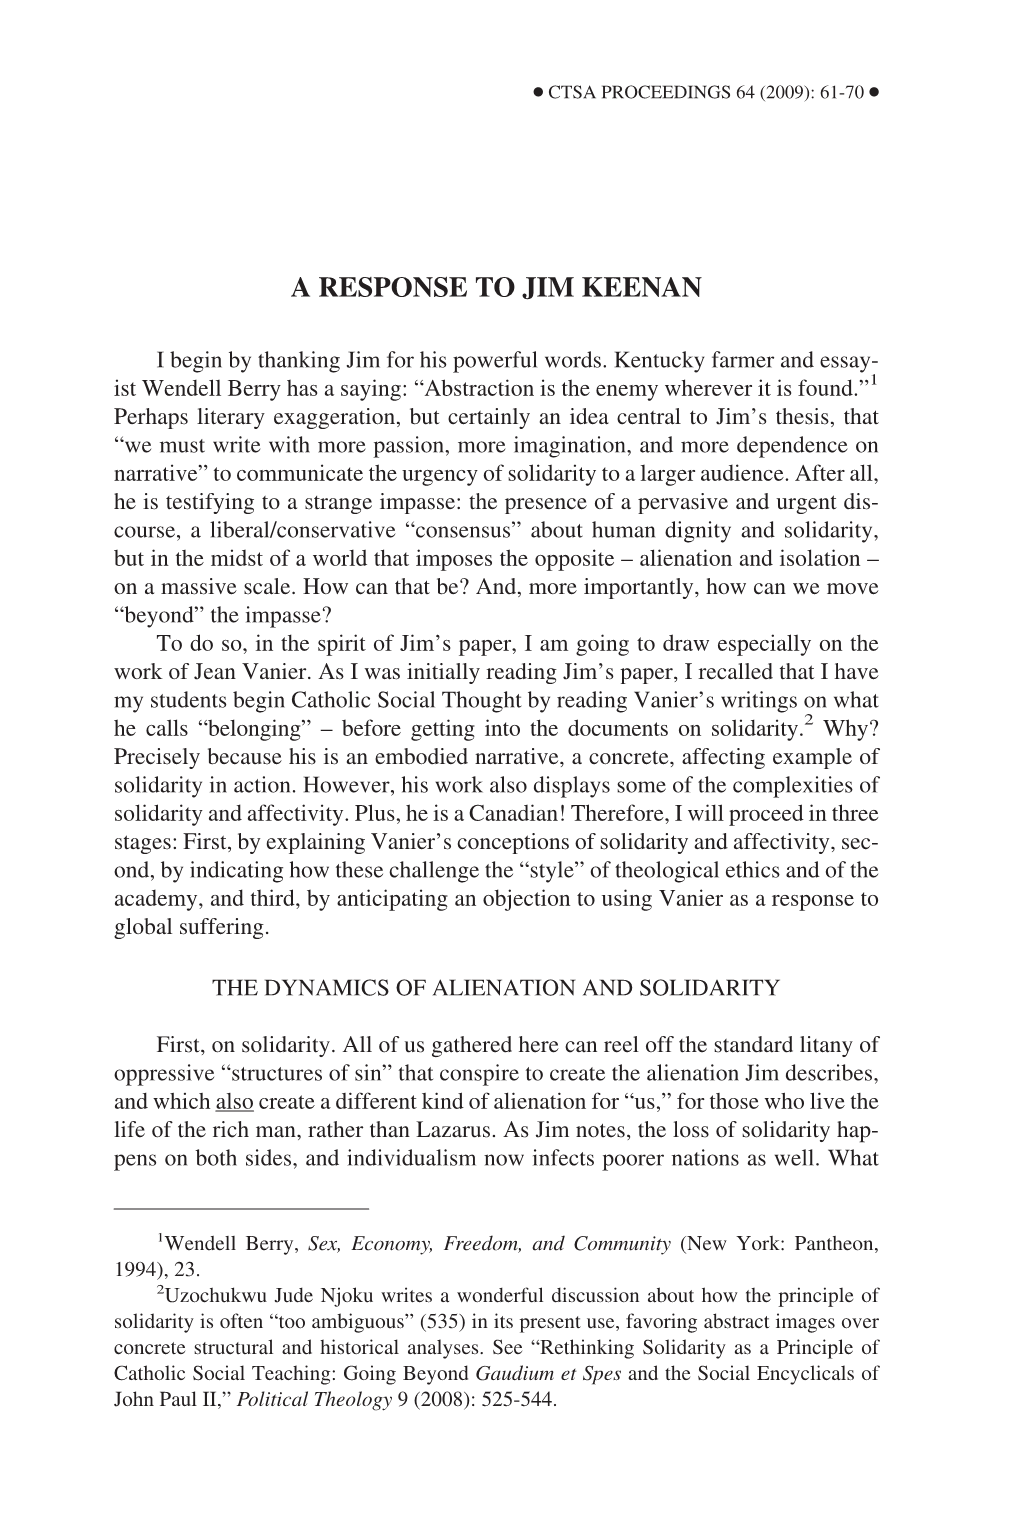 A Response to Jim Keenan